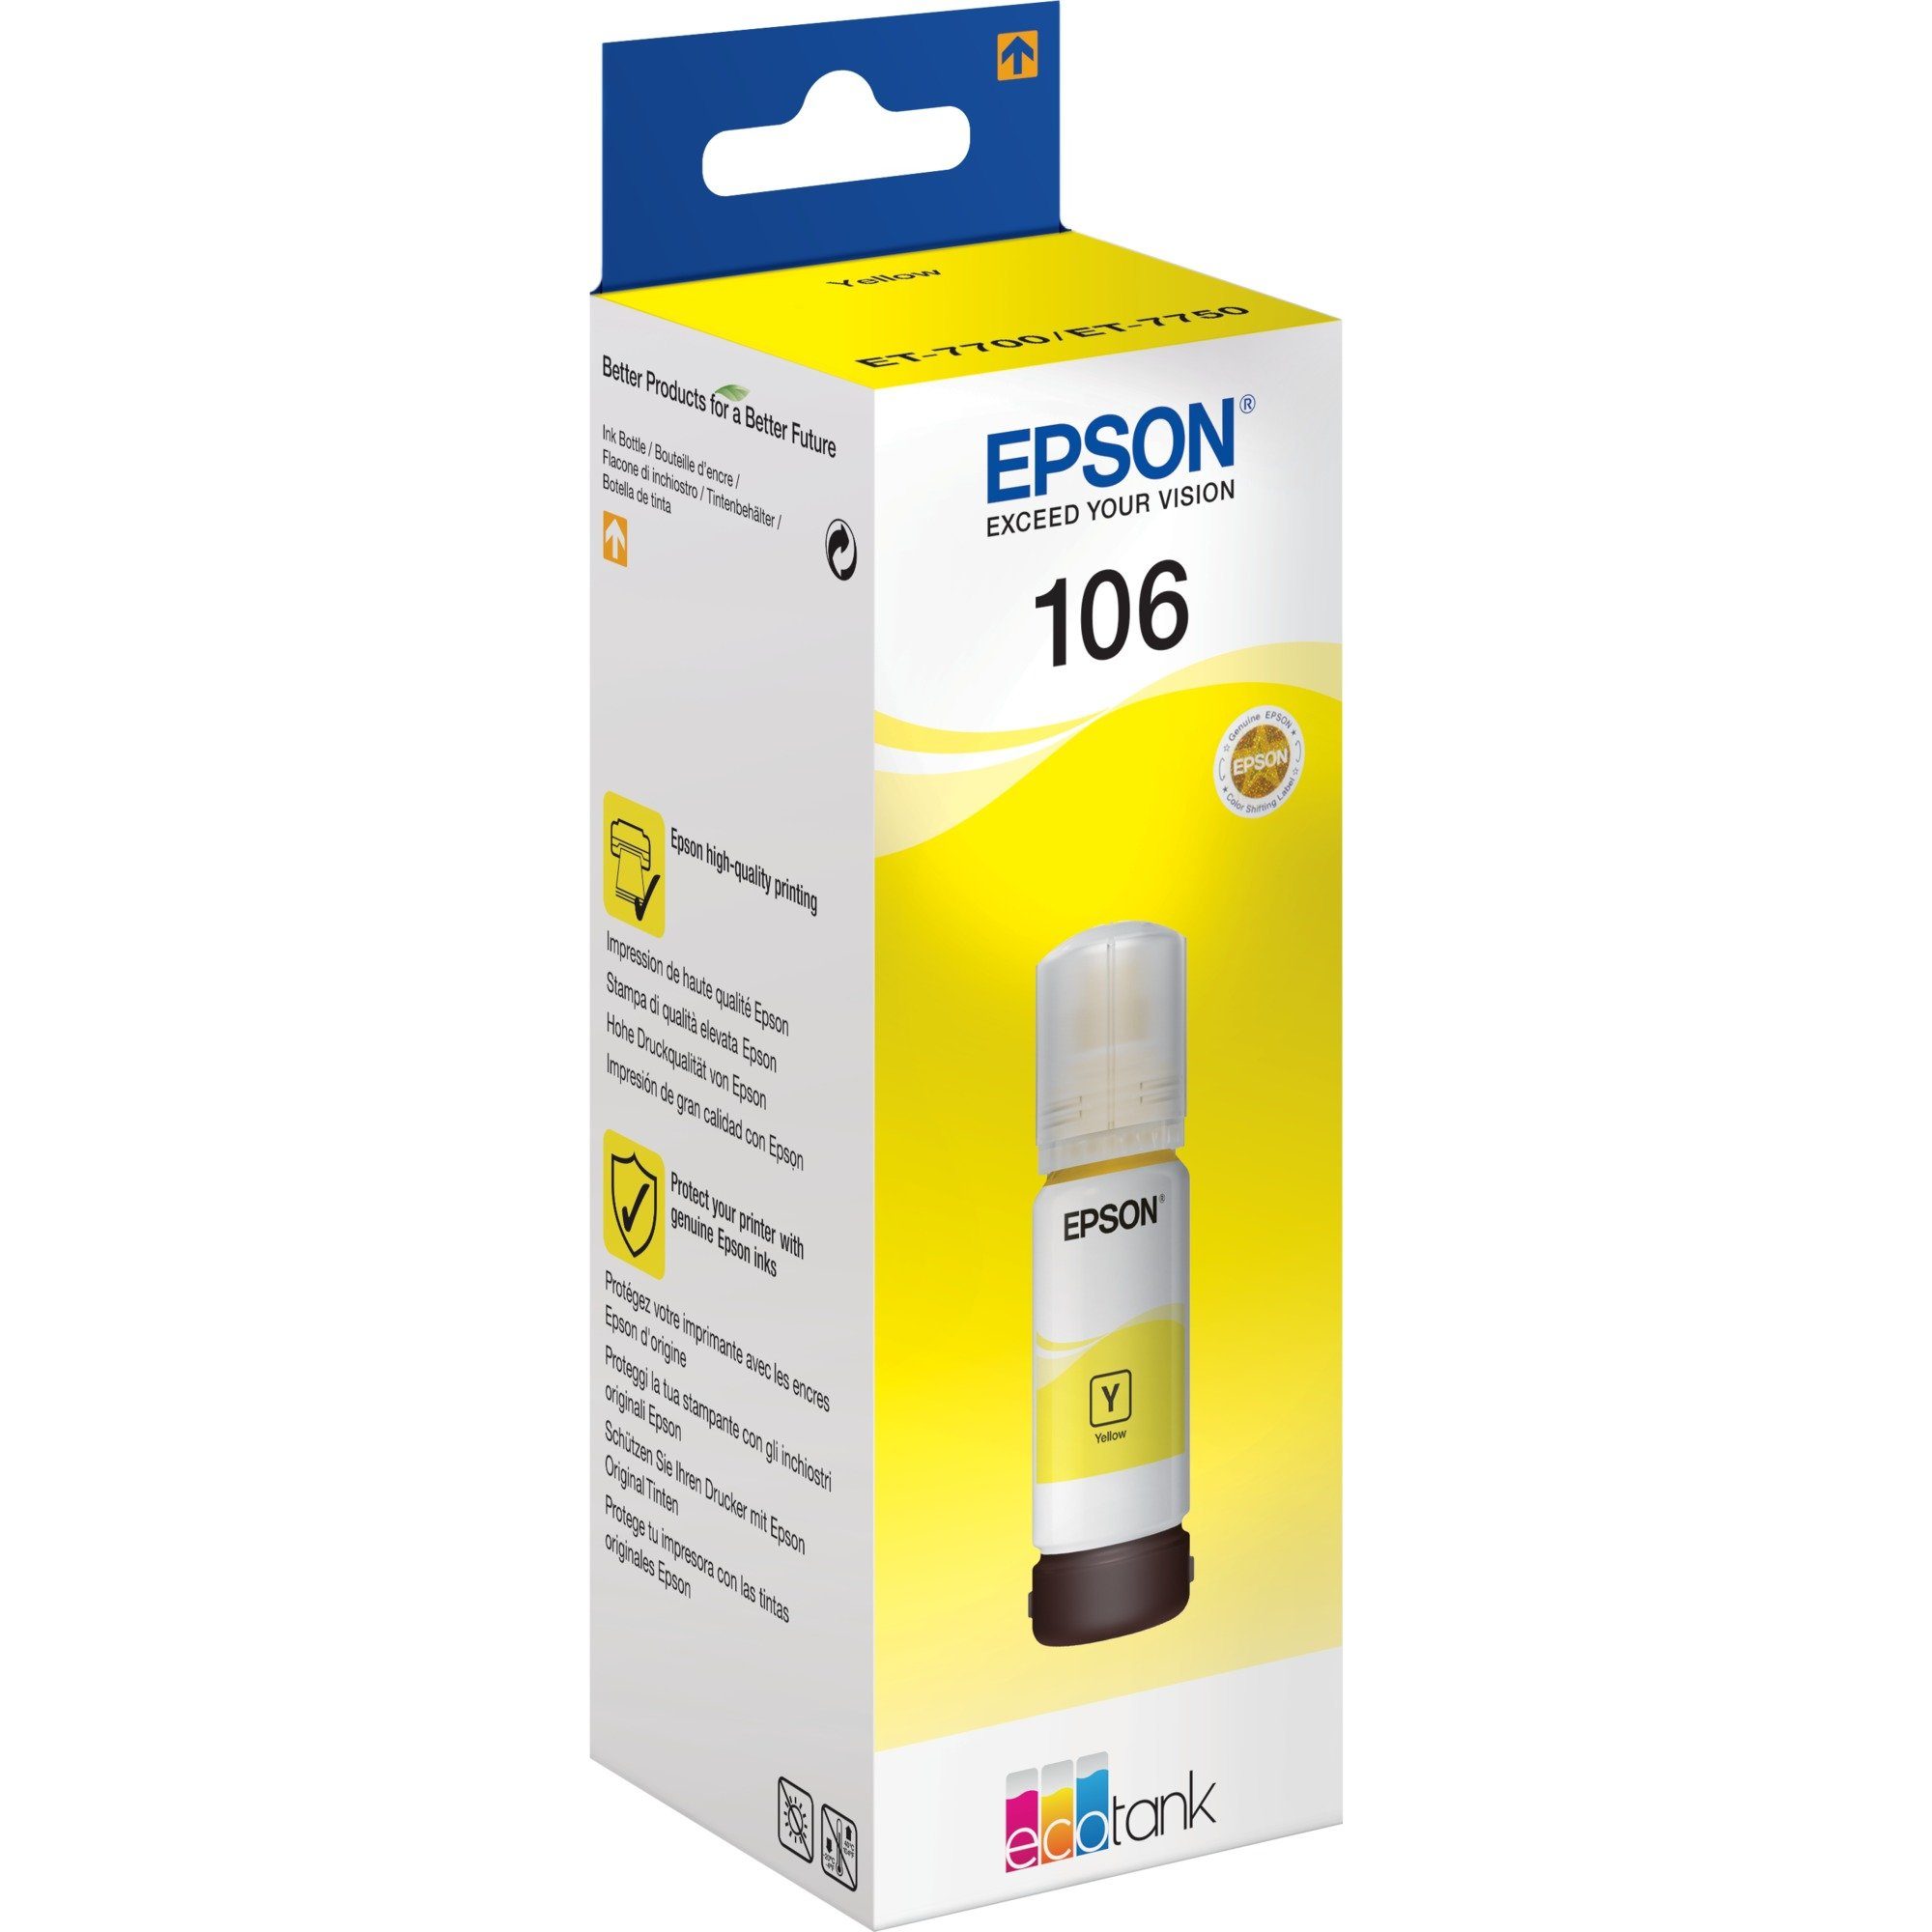 Epson Epson Tinte gelb Tank Tintenpatrone Eco 106 (C13T00R440)